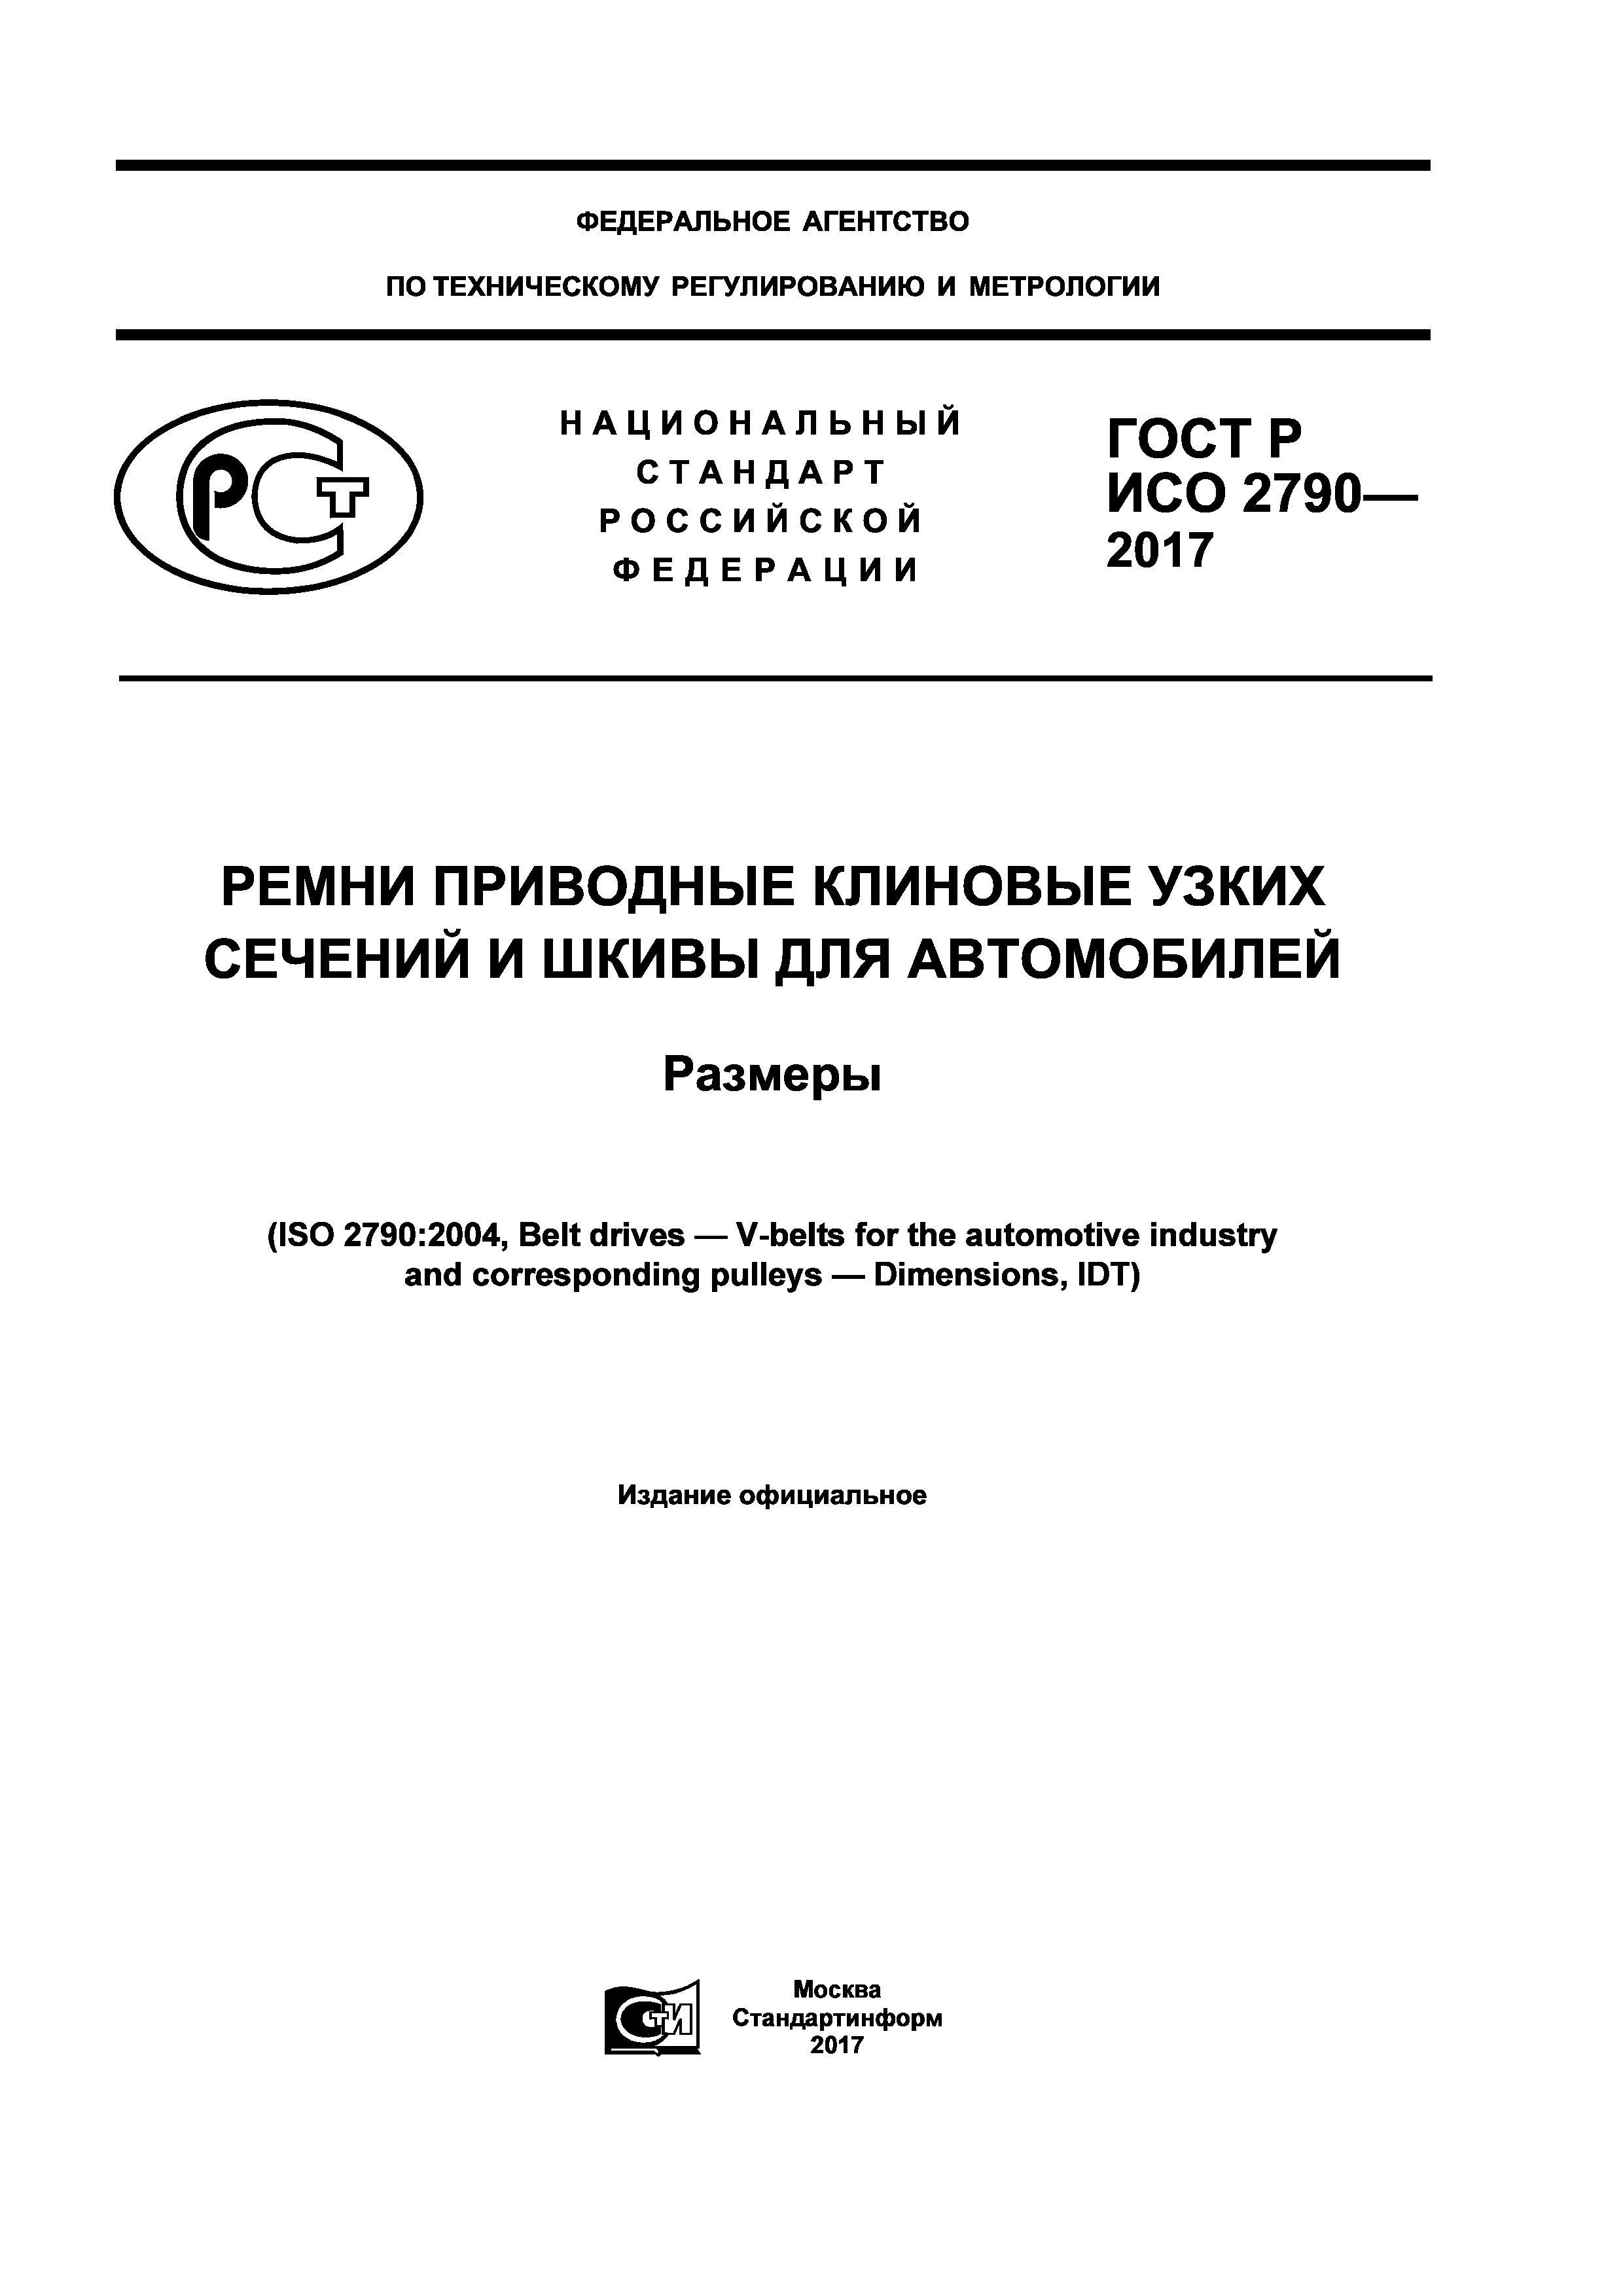 ГОСТ Р ИСО 2790-2017